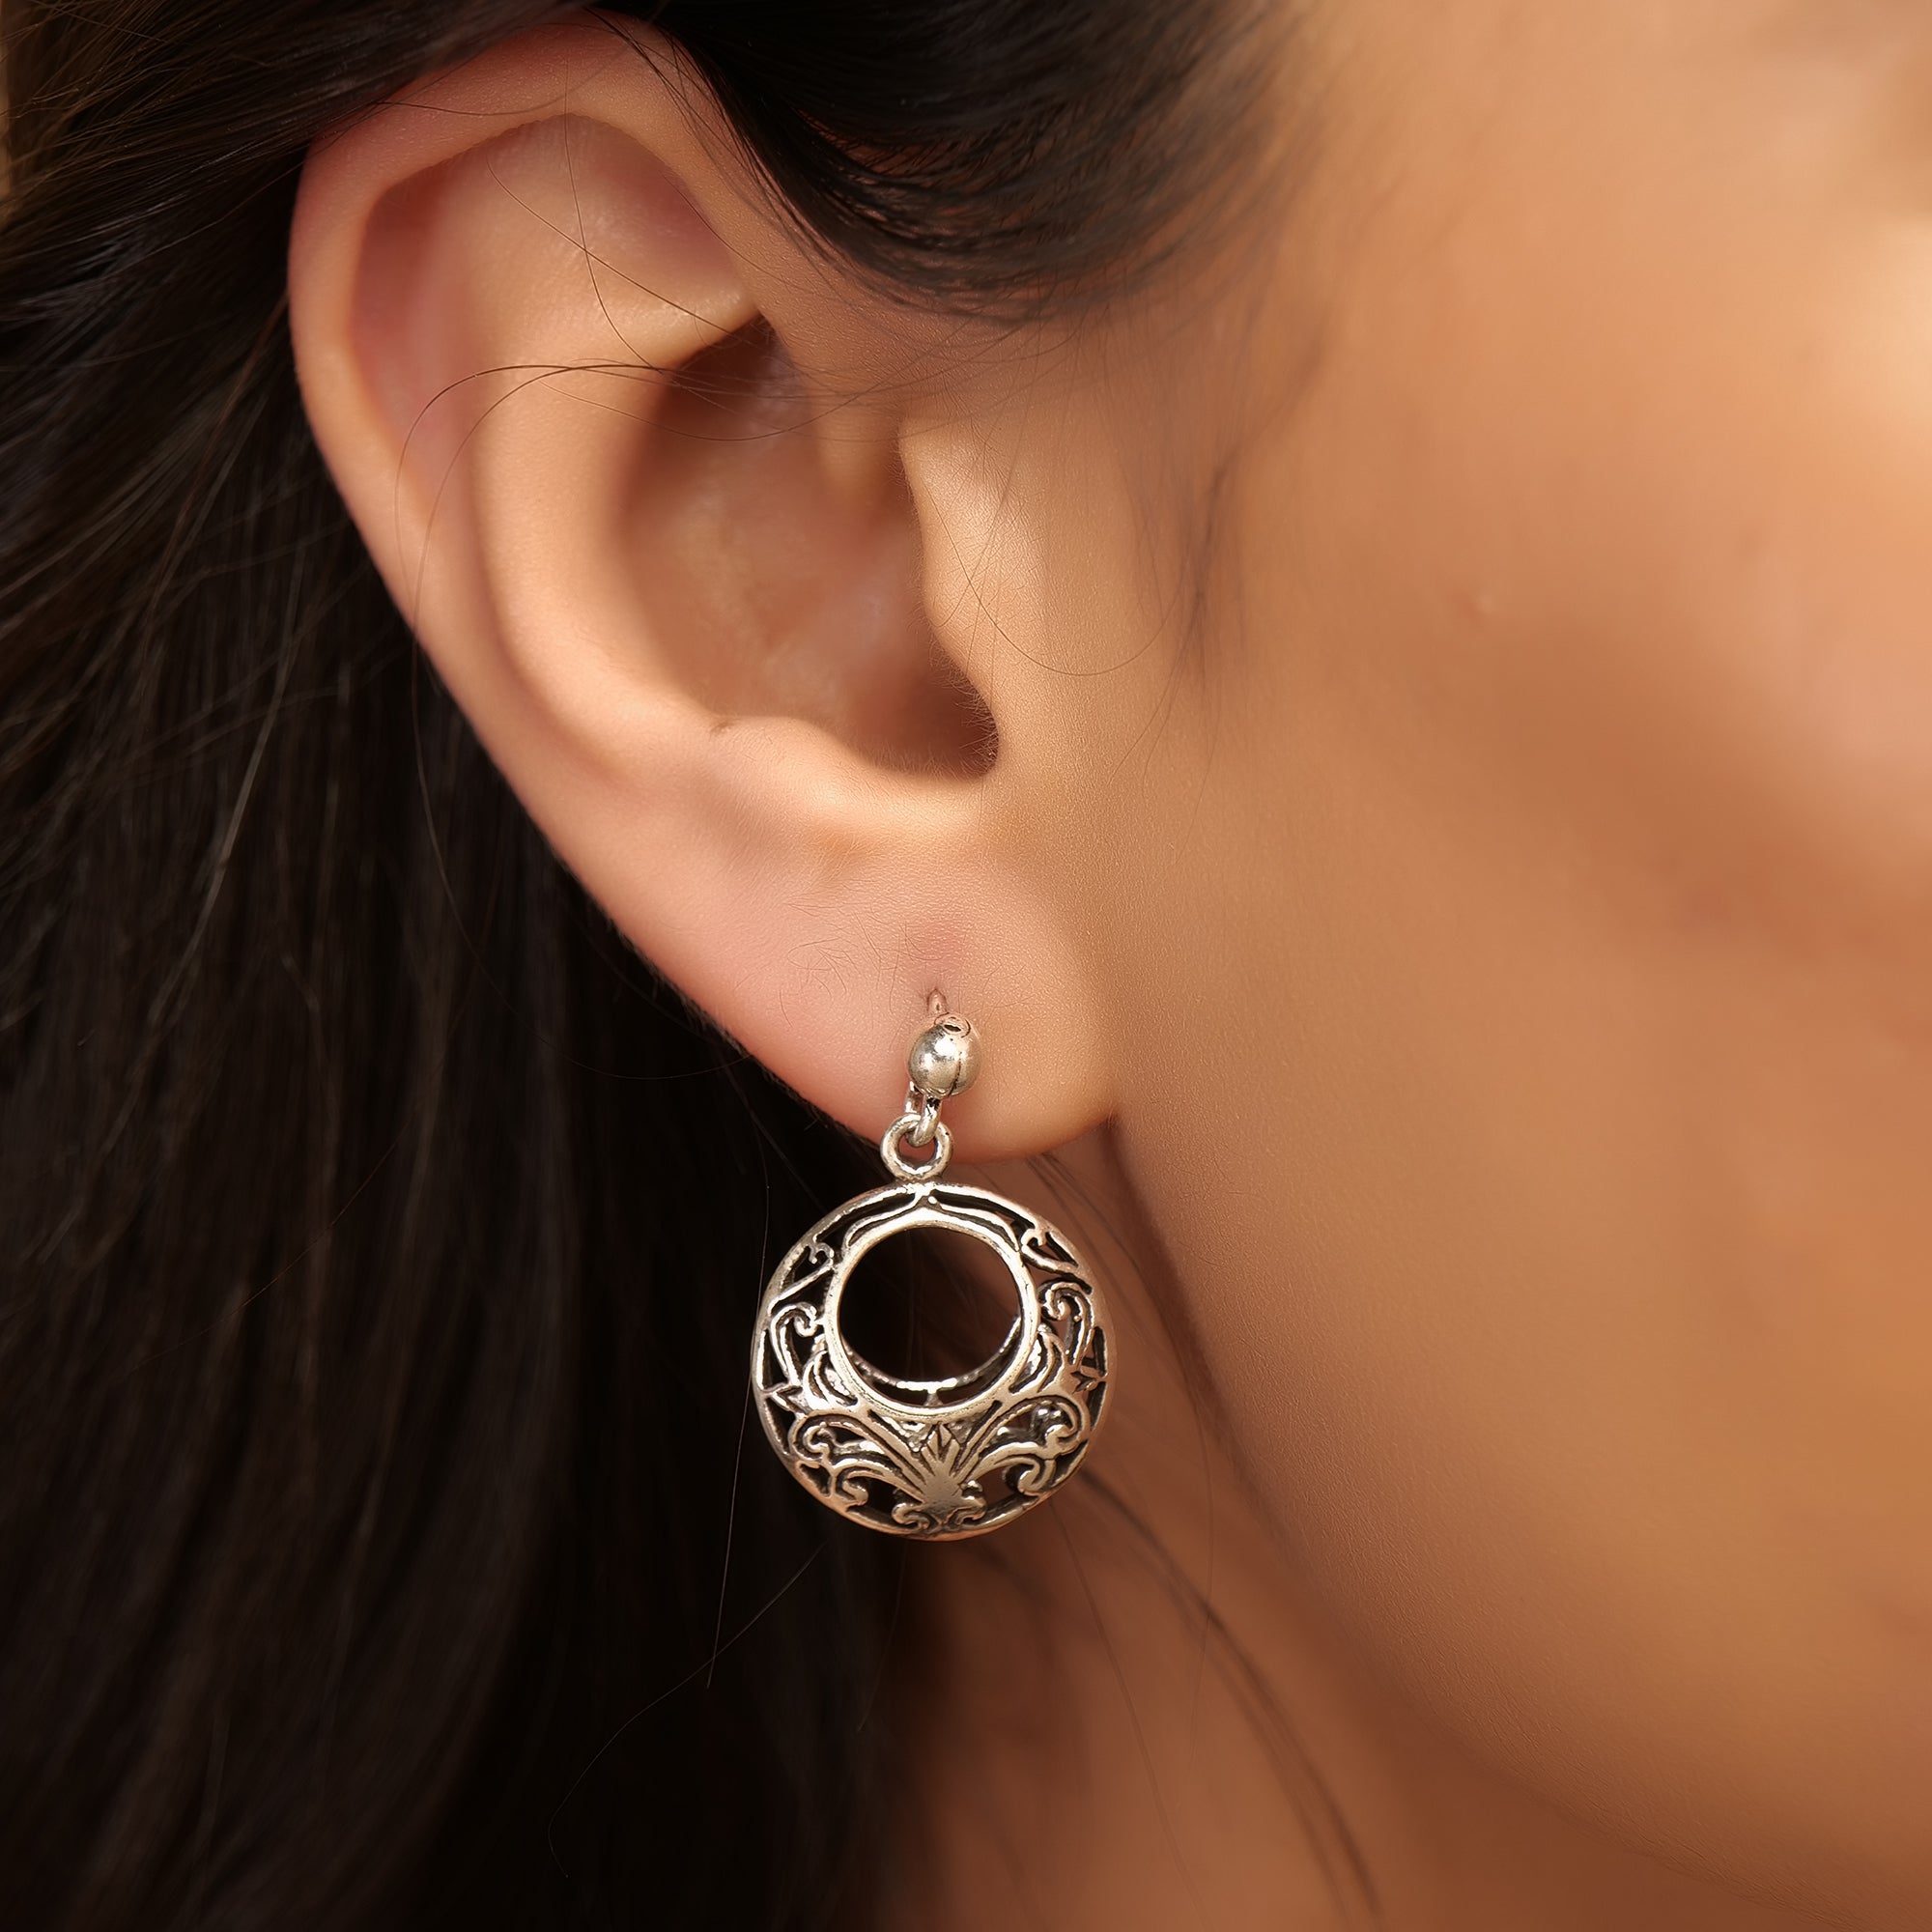 Silver open oxidized earring